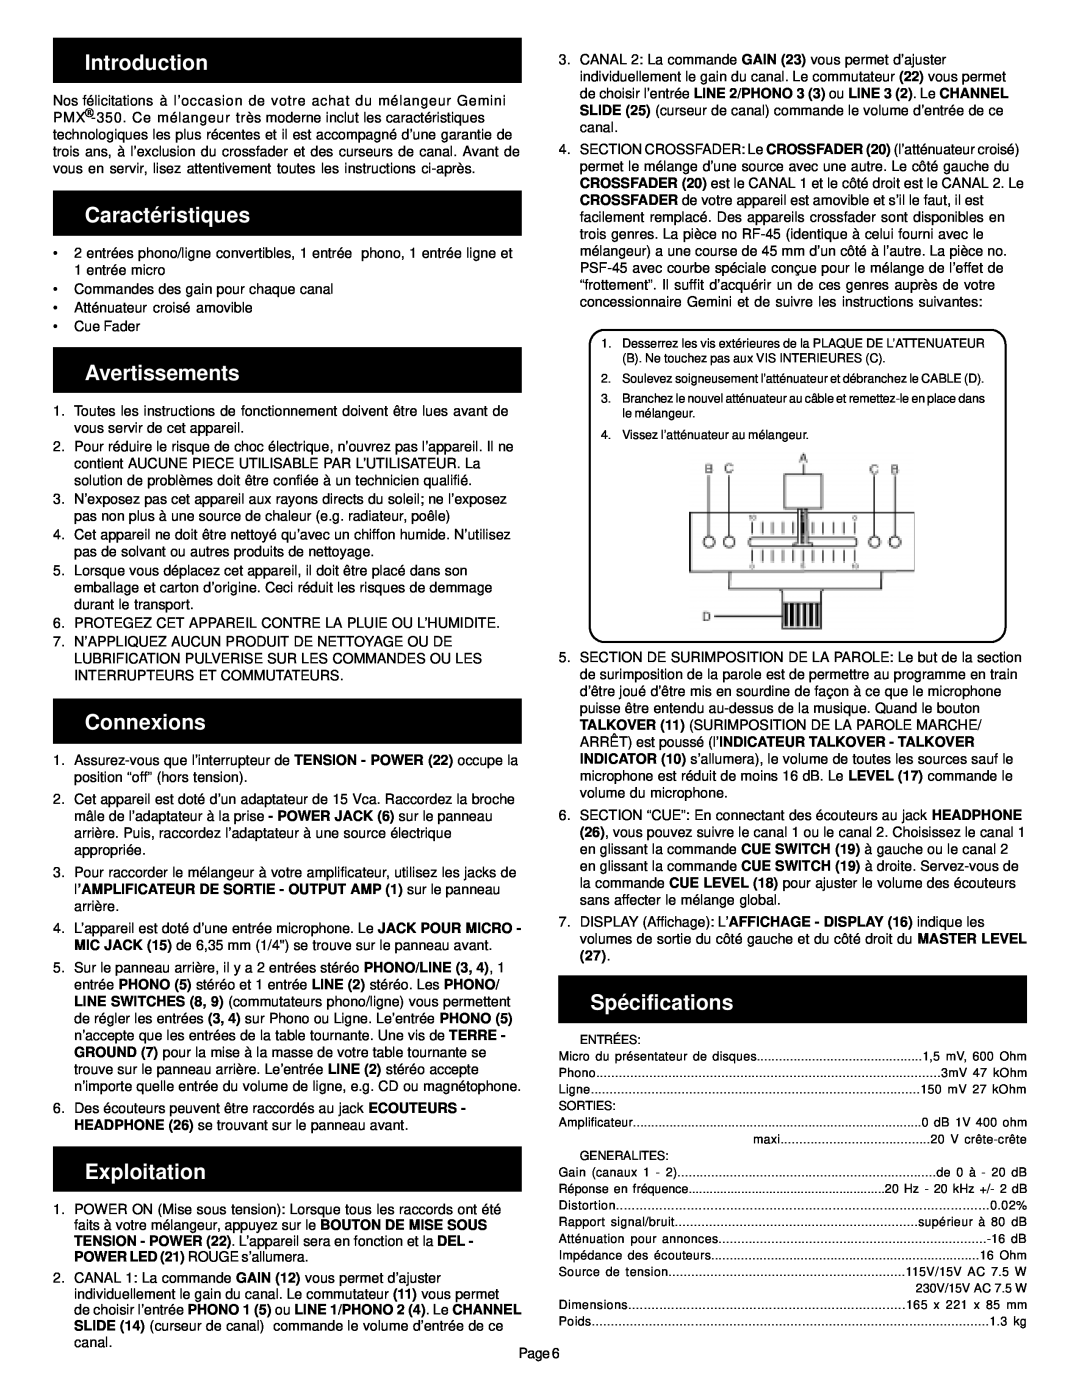 Gemini PMX-350 manual Caractéristiques, Avertissements, Spécifications, Exploitation, Introduction, Connexions 